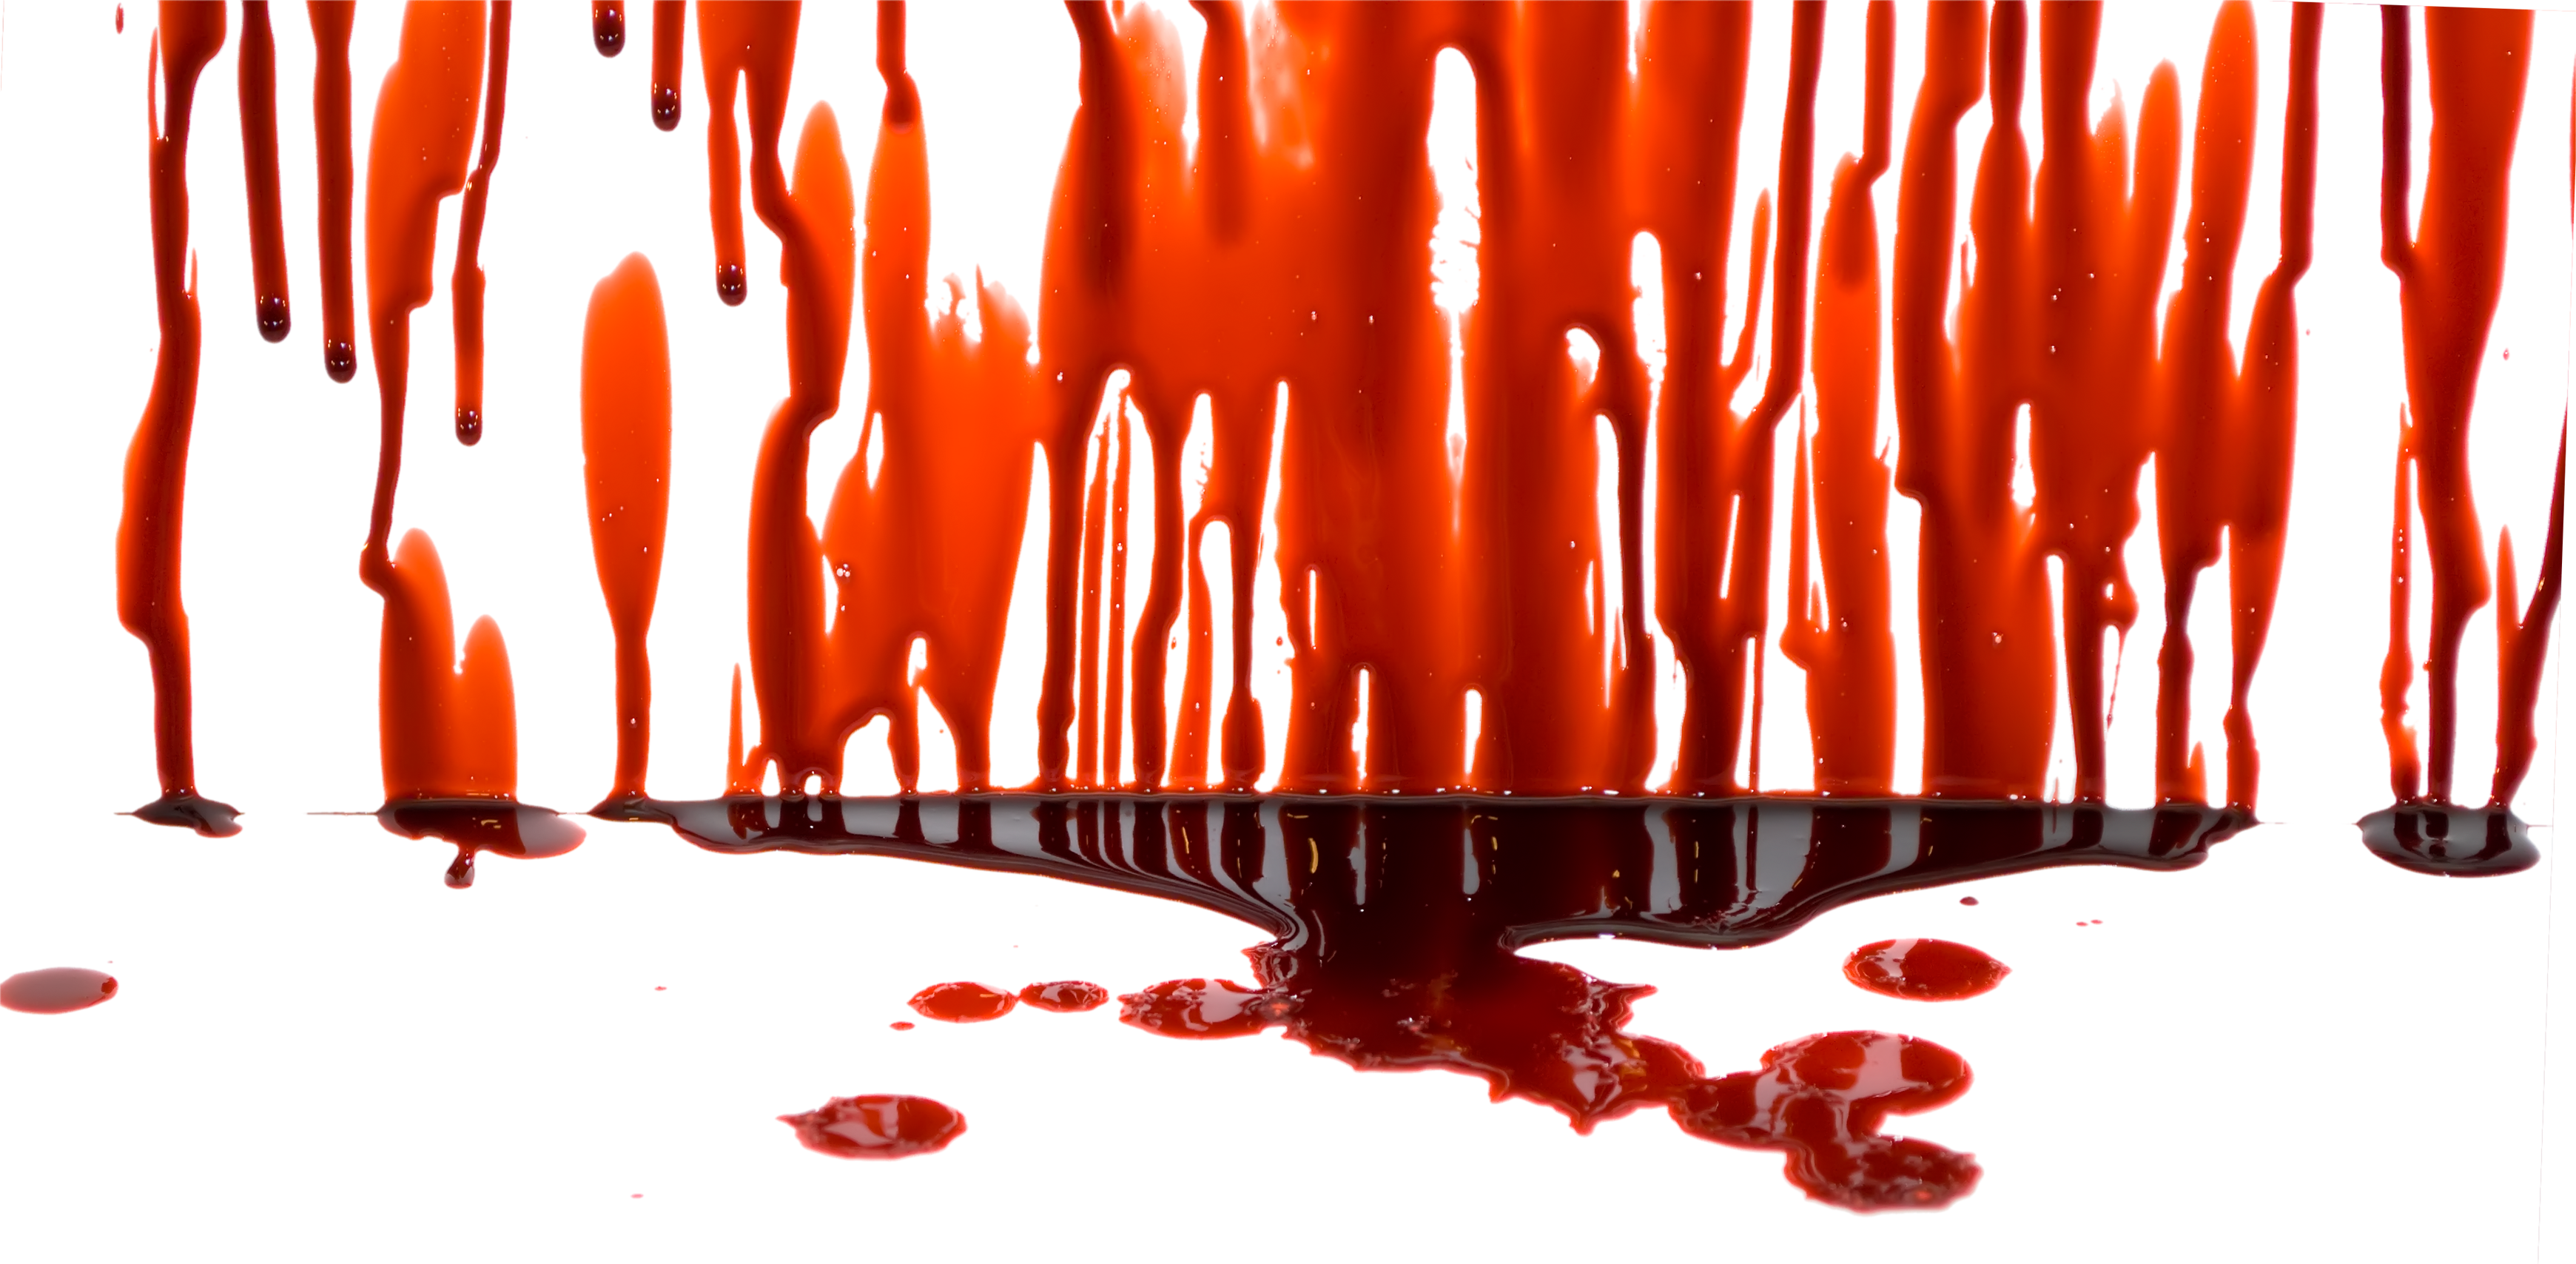 Blood Splatter Grunge Transparent Image